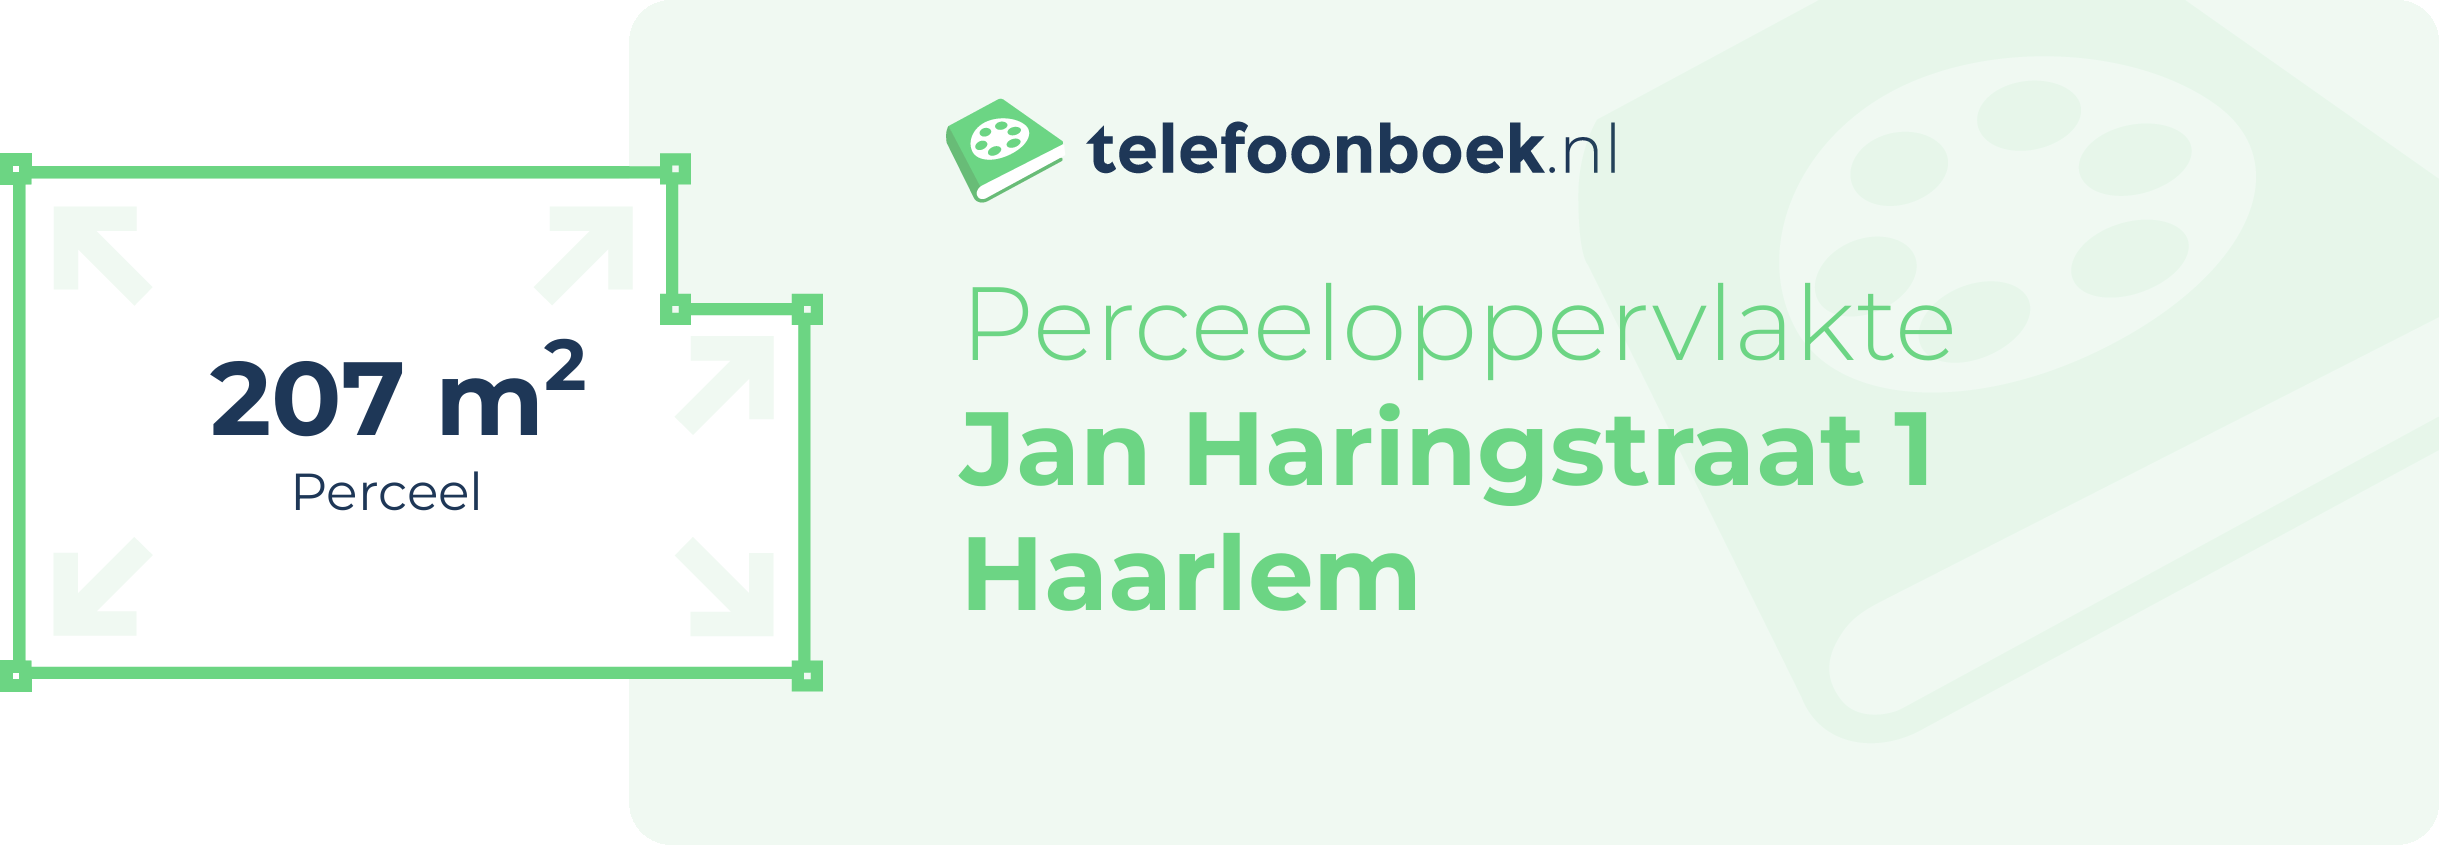 Perceeloppervlakte Jan Haringstraat 1 Haarlem